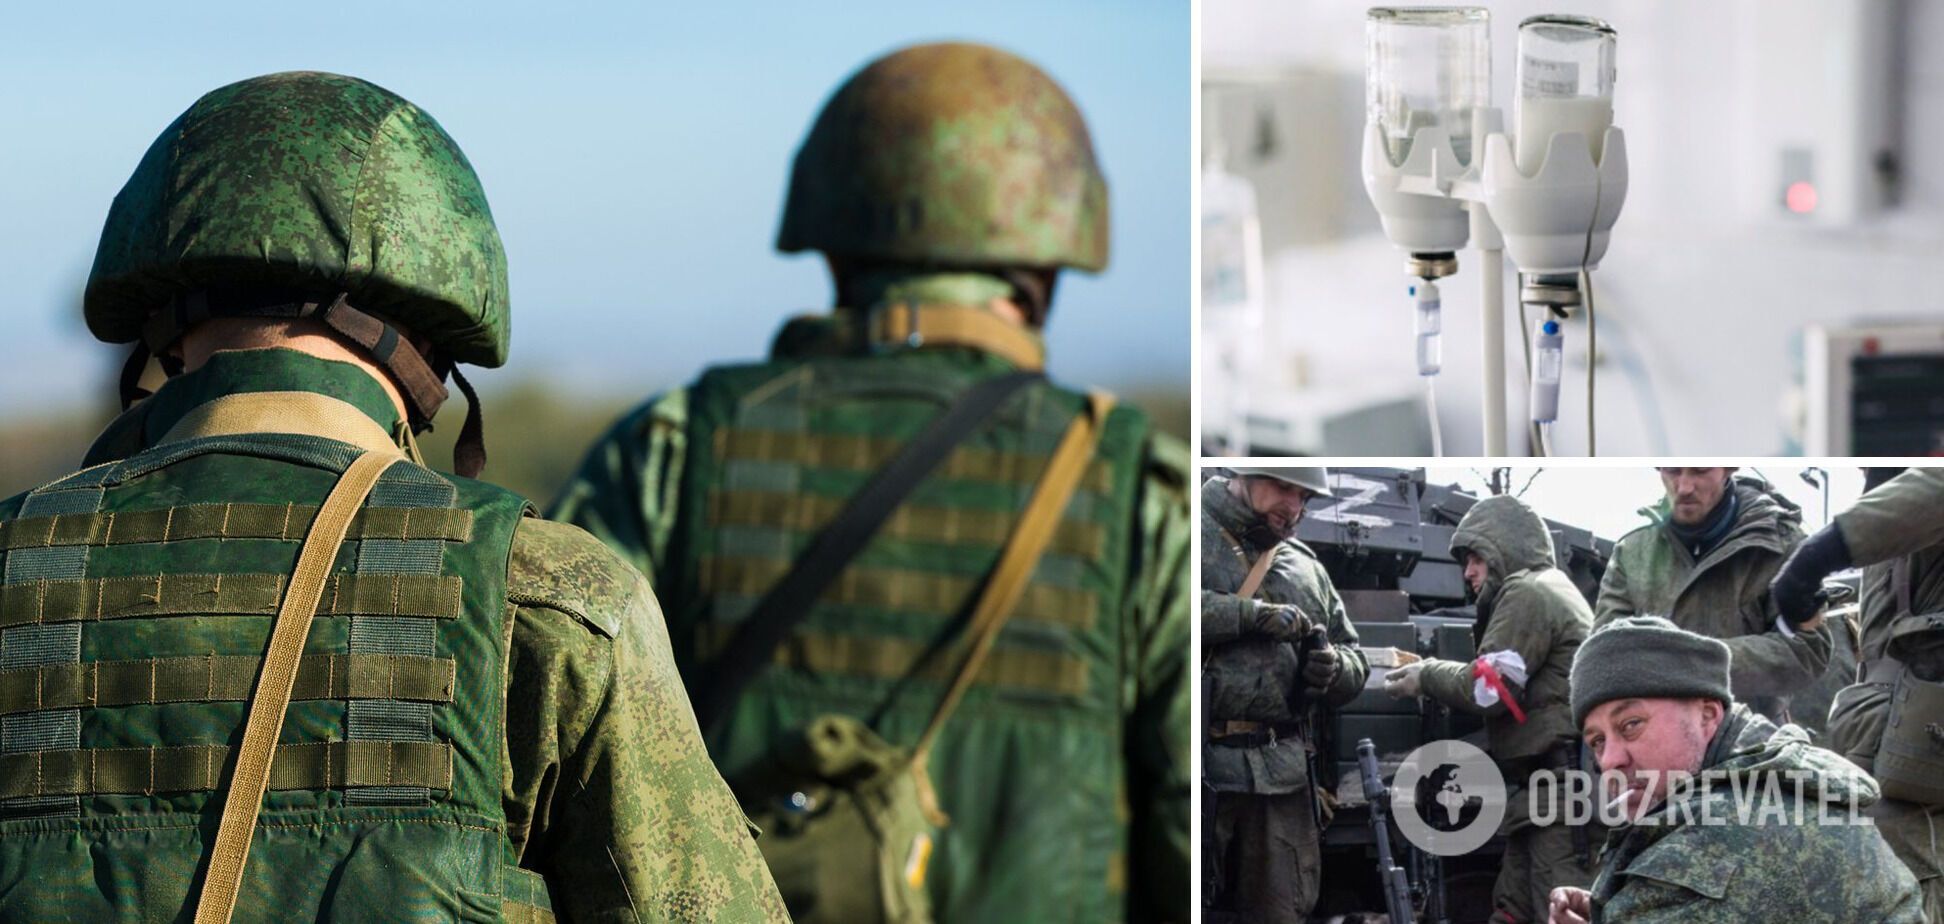 Работали партизаны? В Мариуполе отравили 17 российских военных, говорят о применении цианида